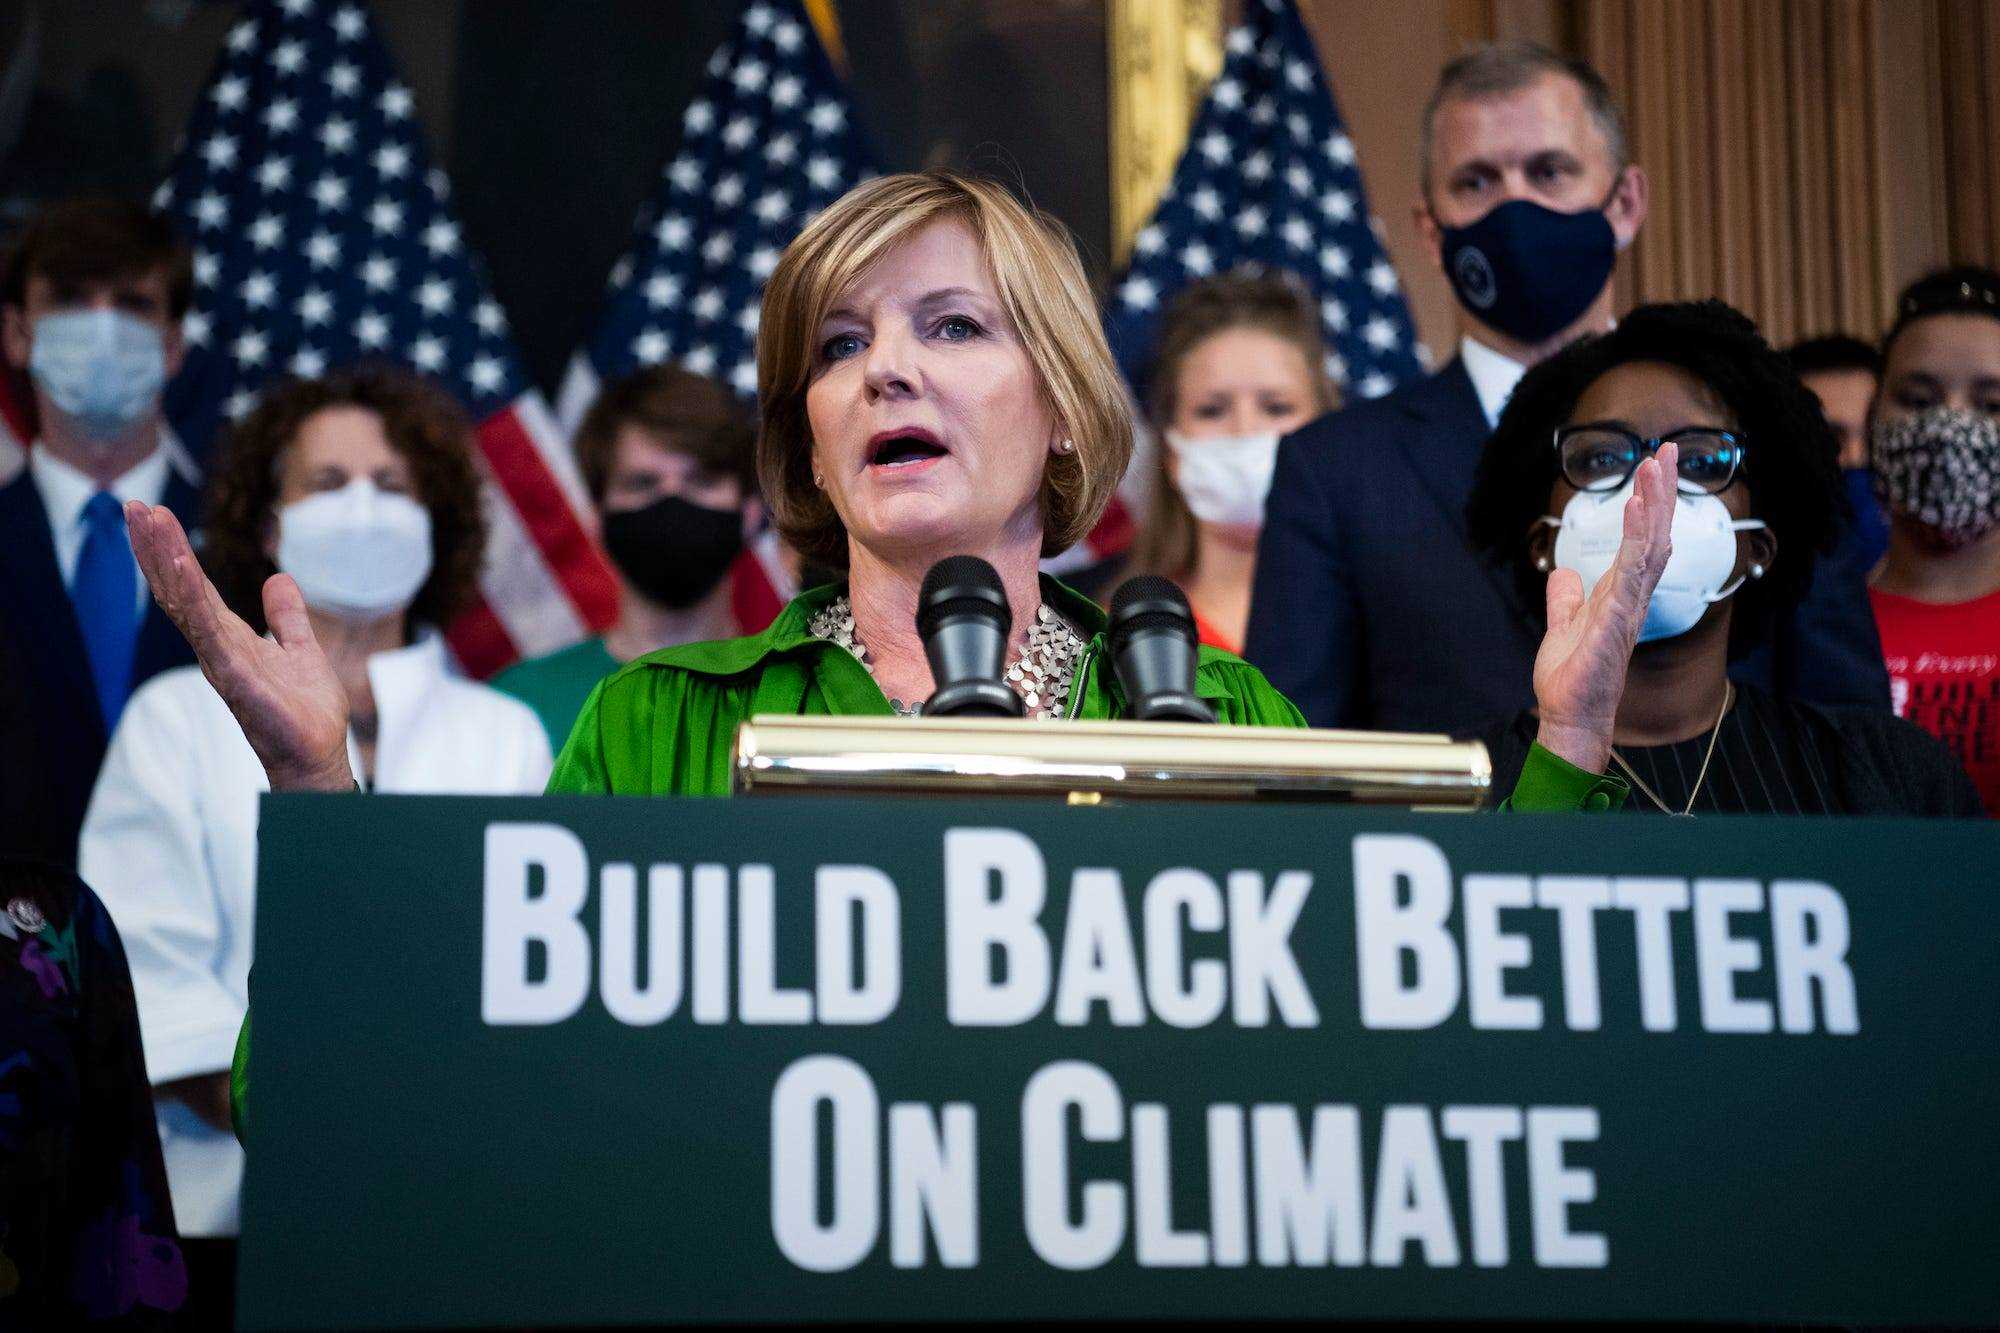 Die demokratische Abgeordnete Susie Lee aus Nevada, die eine grüne Bluse trägt, leitet eine Pressekonferenz auf dem Capitol Hill über Fragen der Klimakrise und die Biden-Agenda.